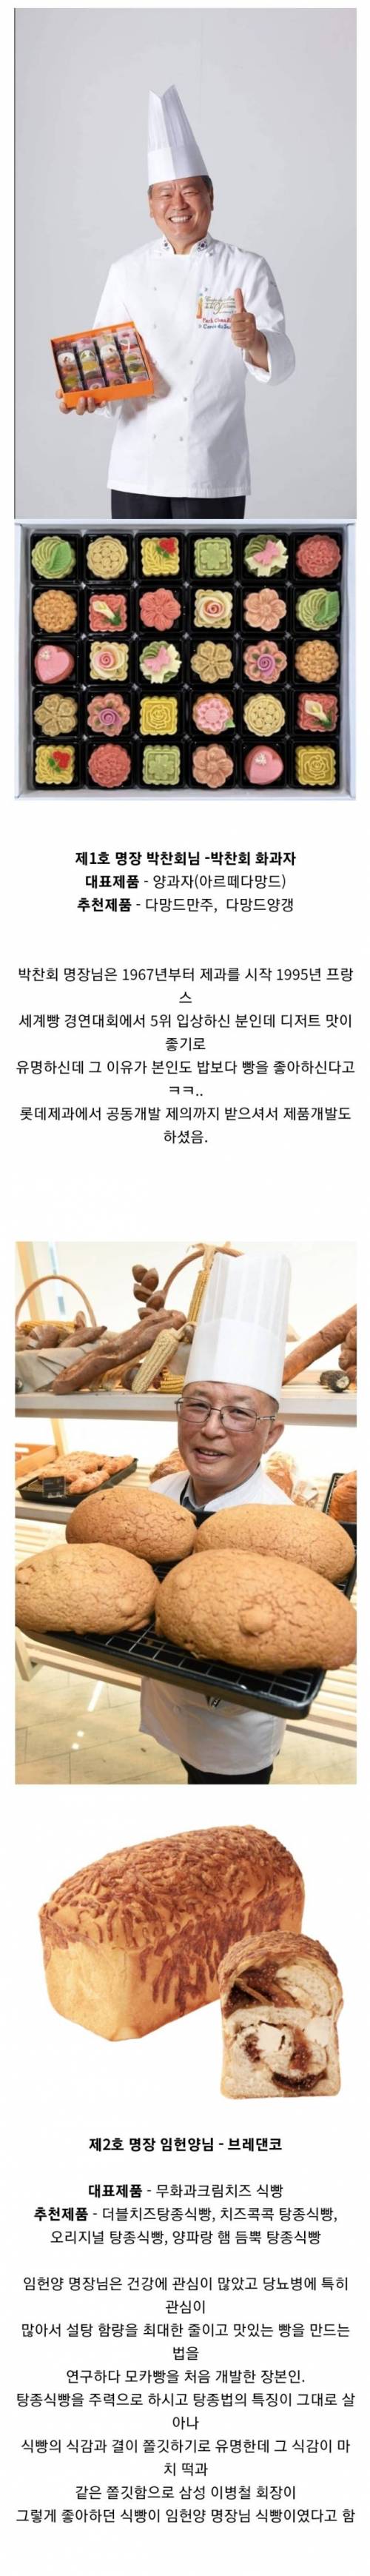 5 한국 제과명장 14인과 대표빵.jpg